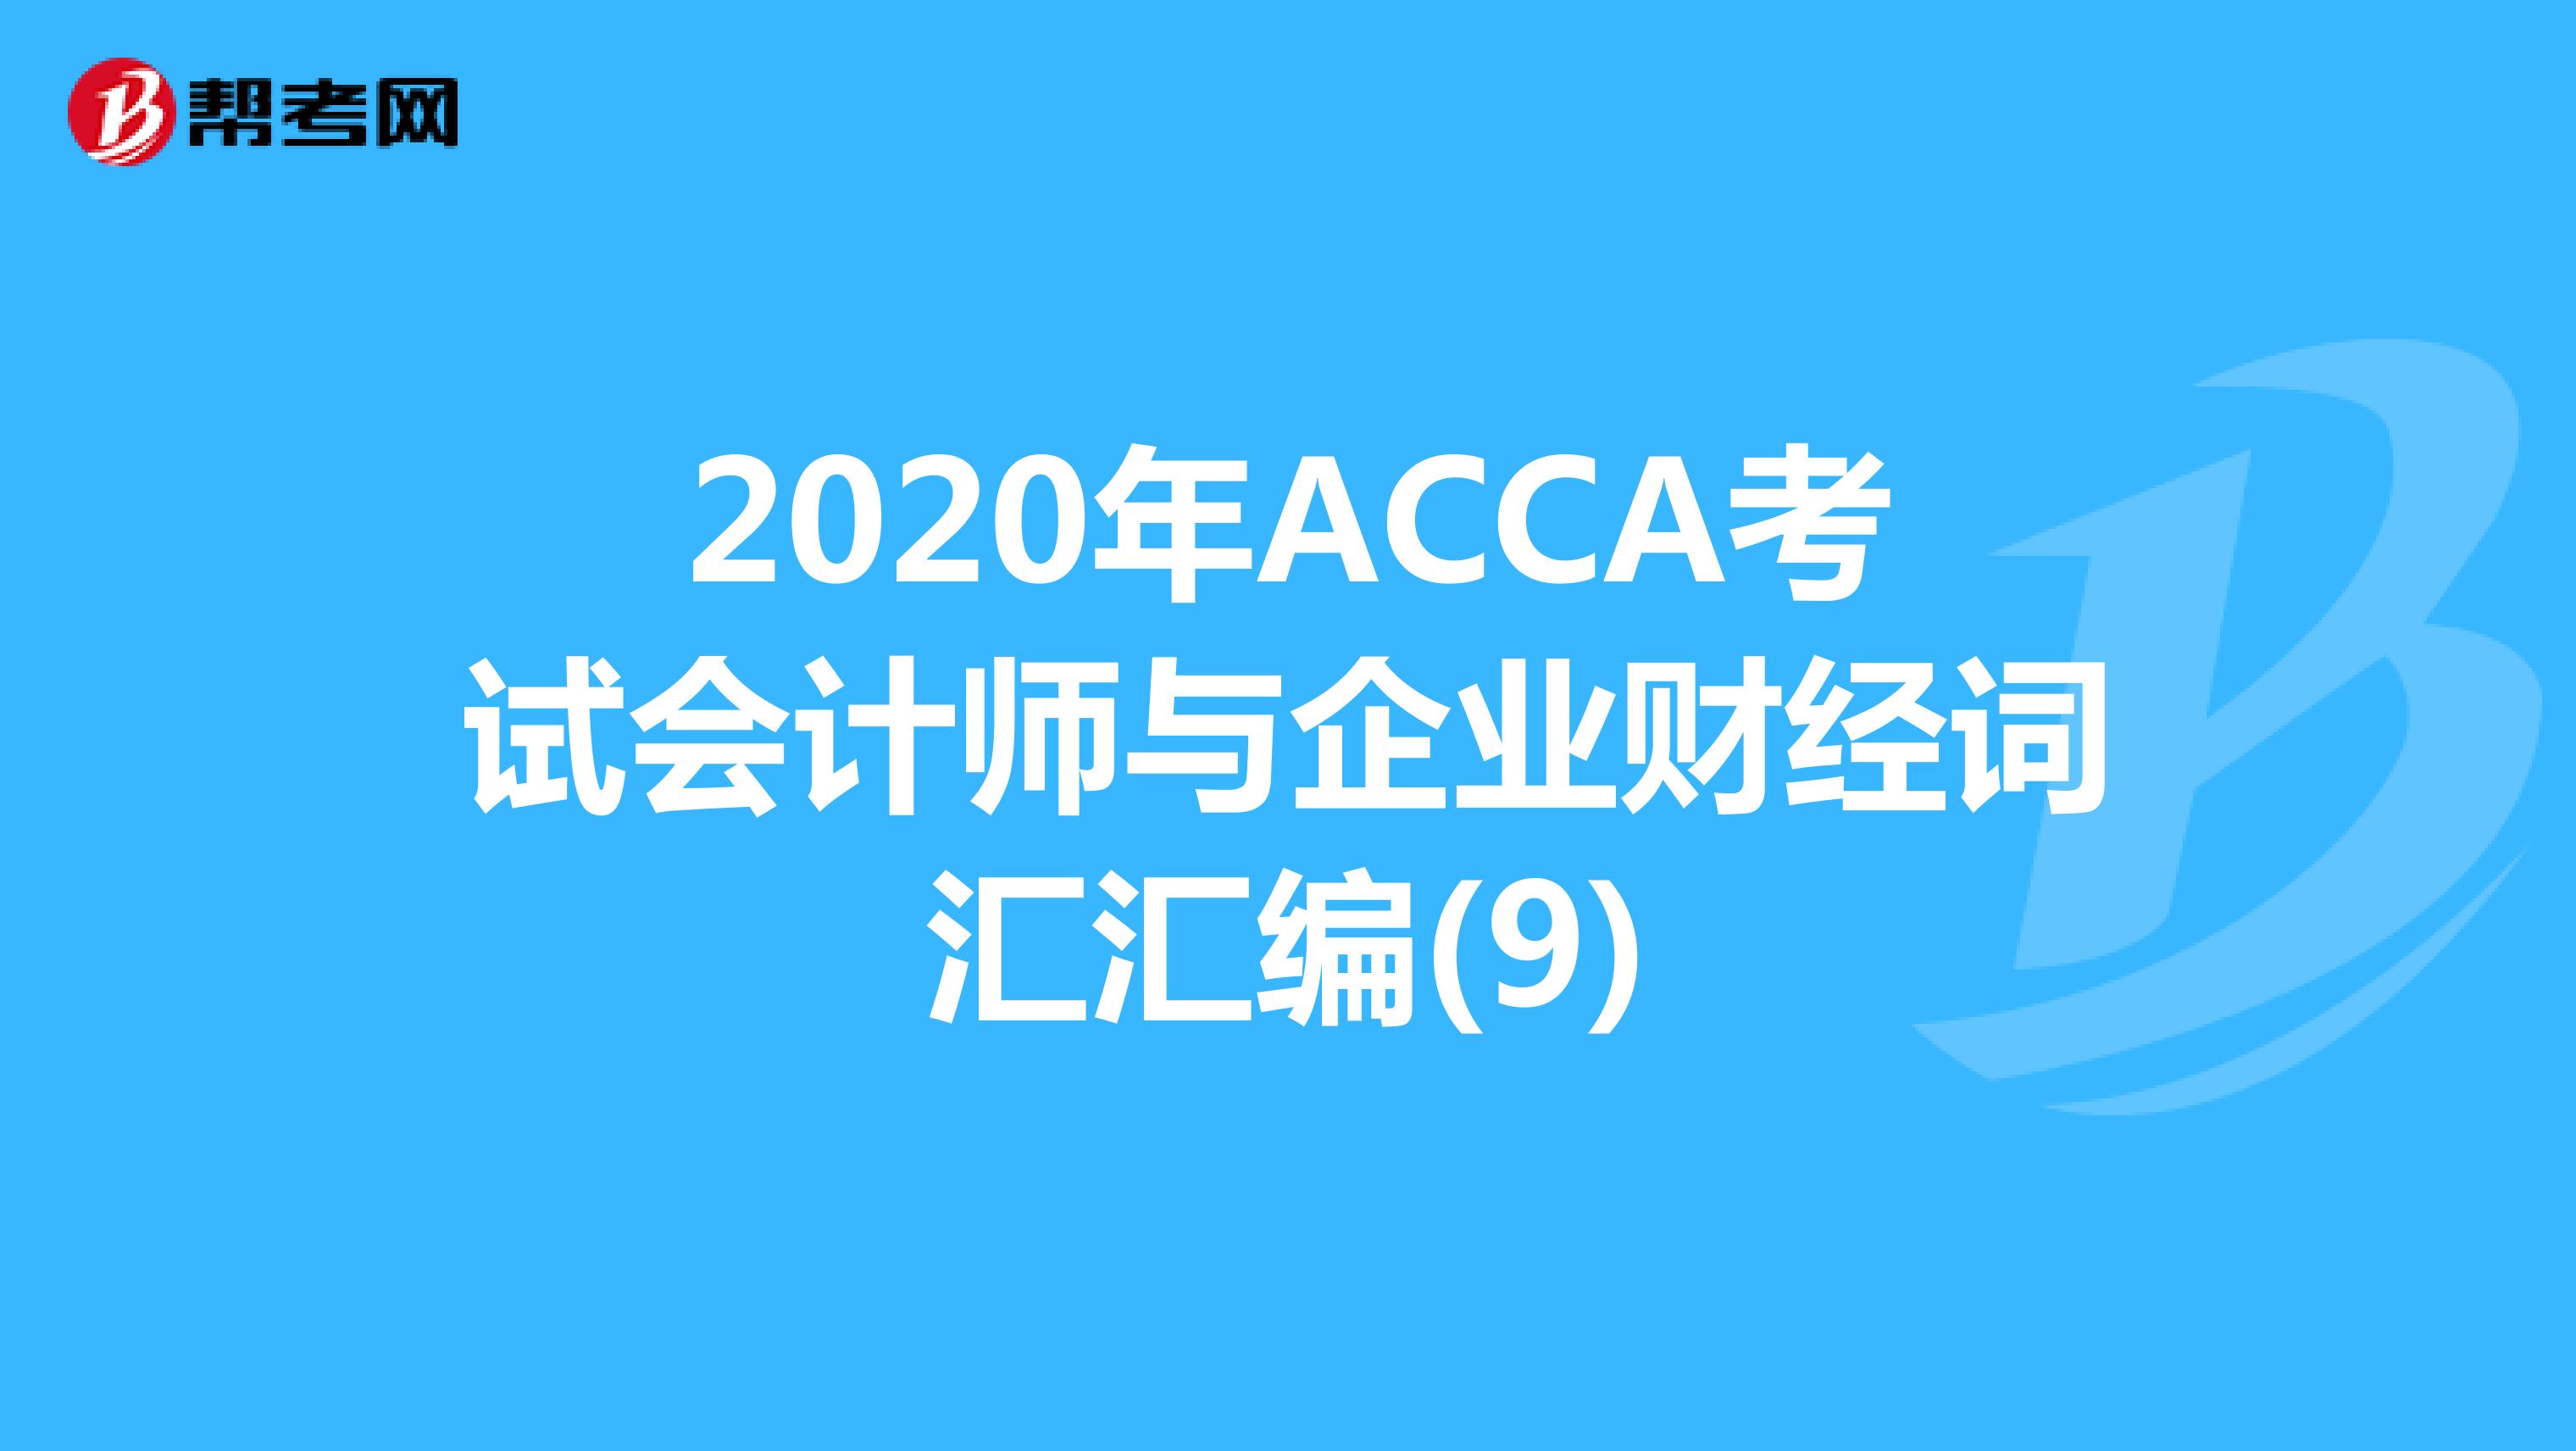 2020年ACCA考试会计师与企业财经词汇汇编(9)